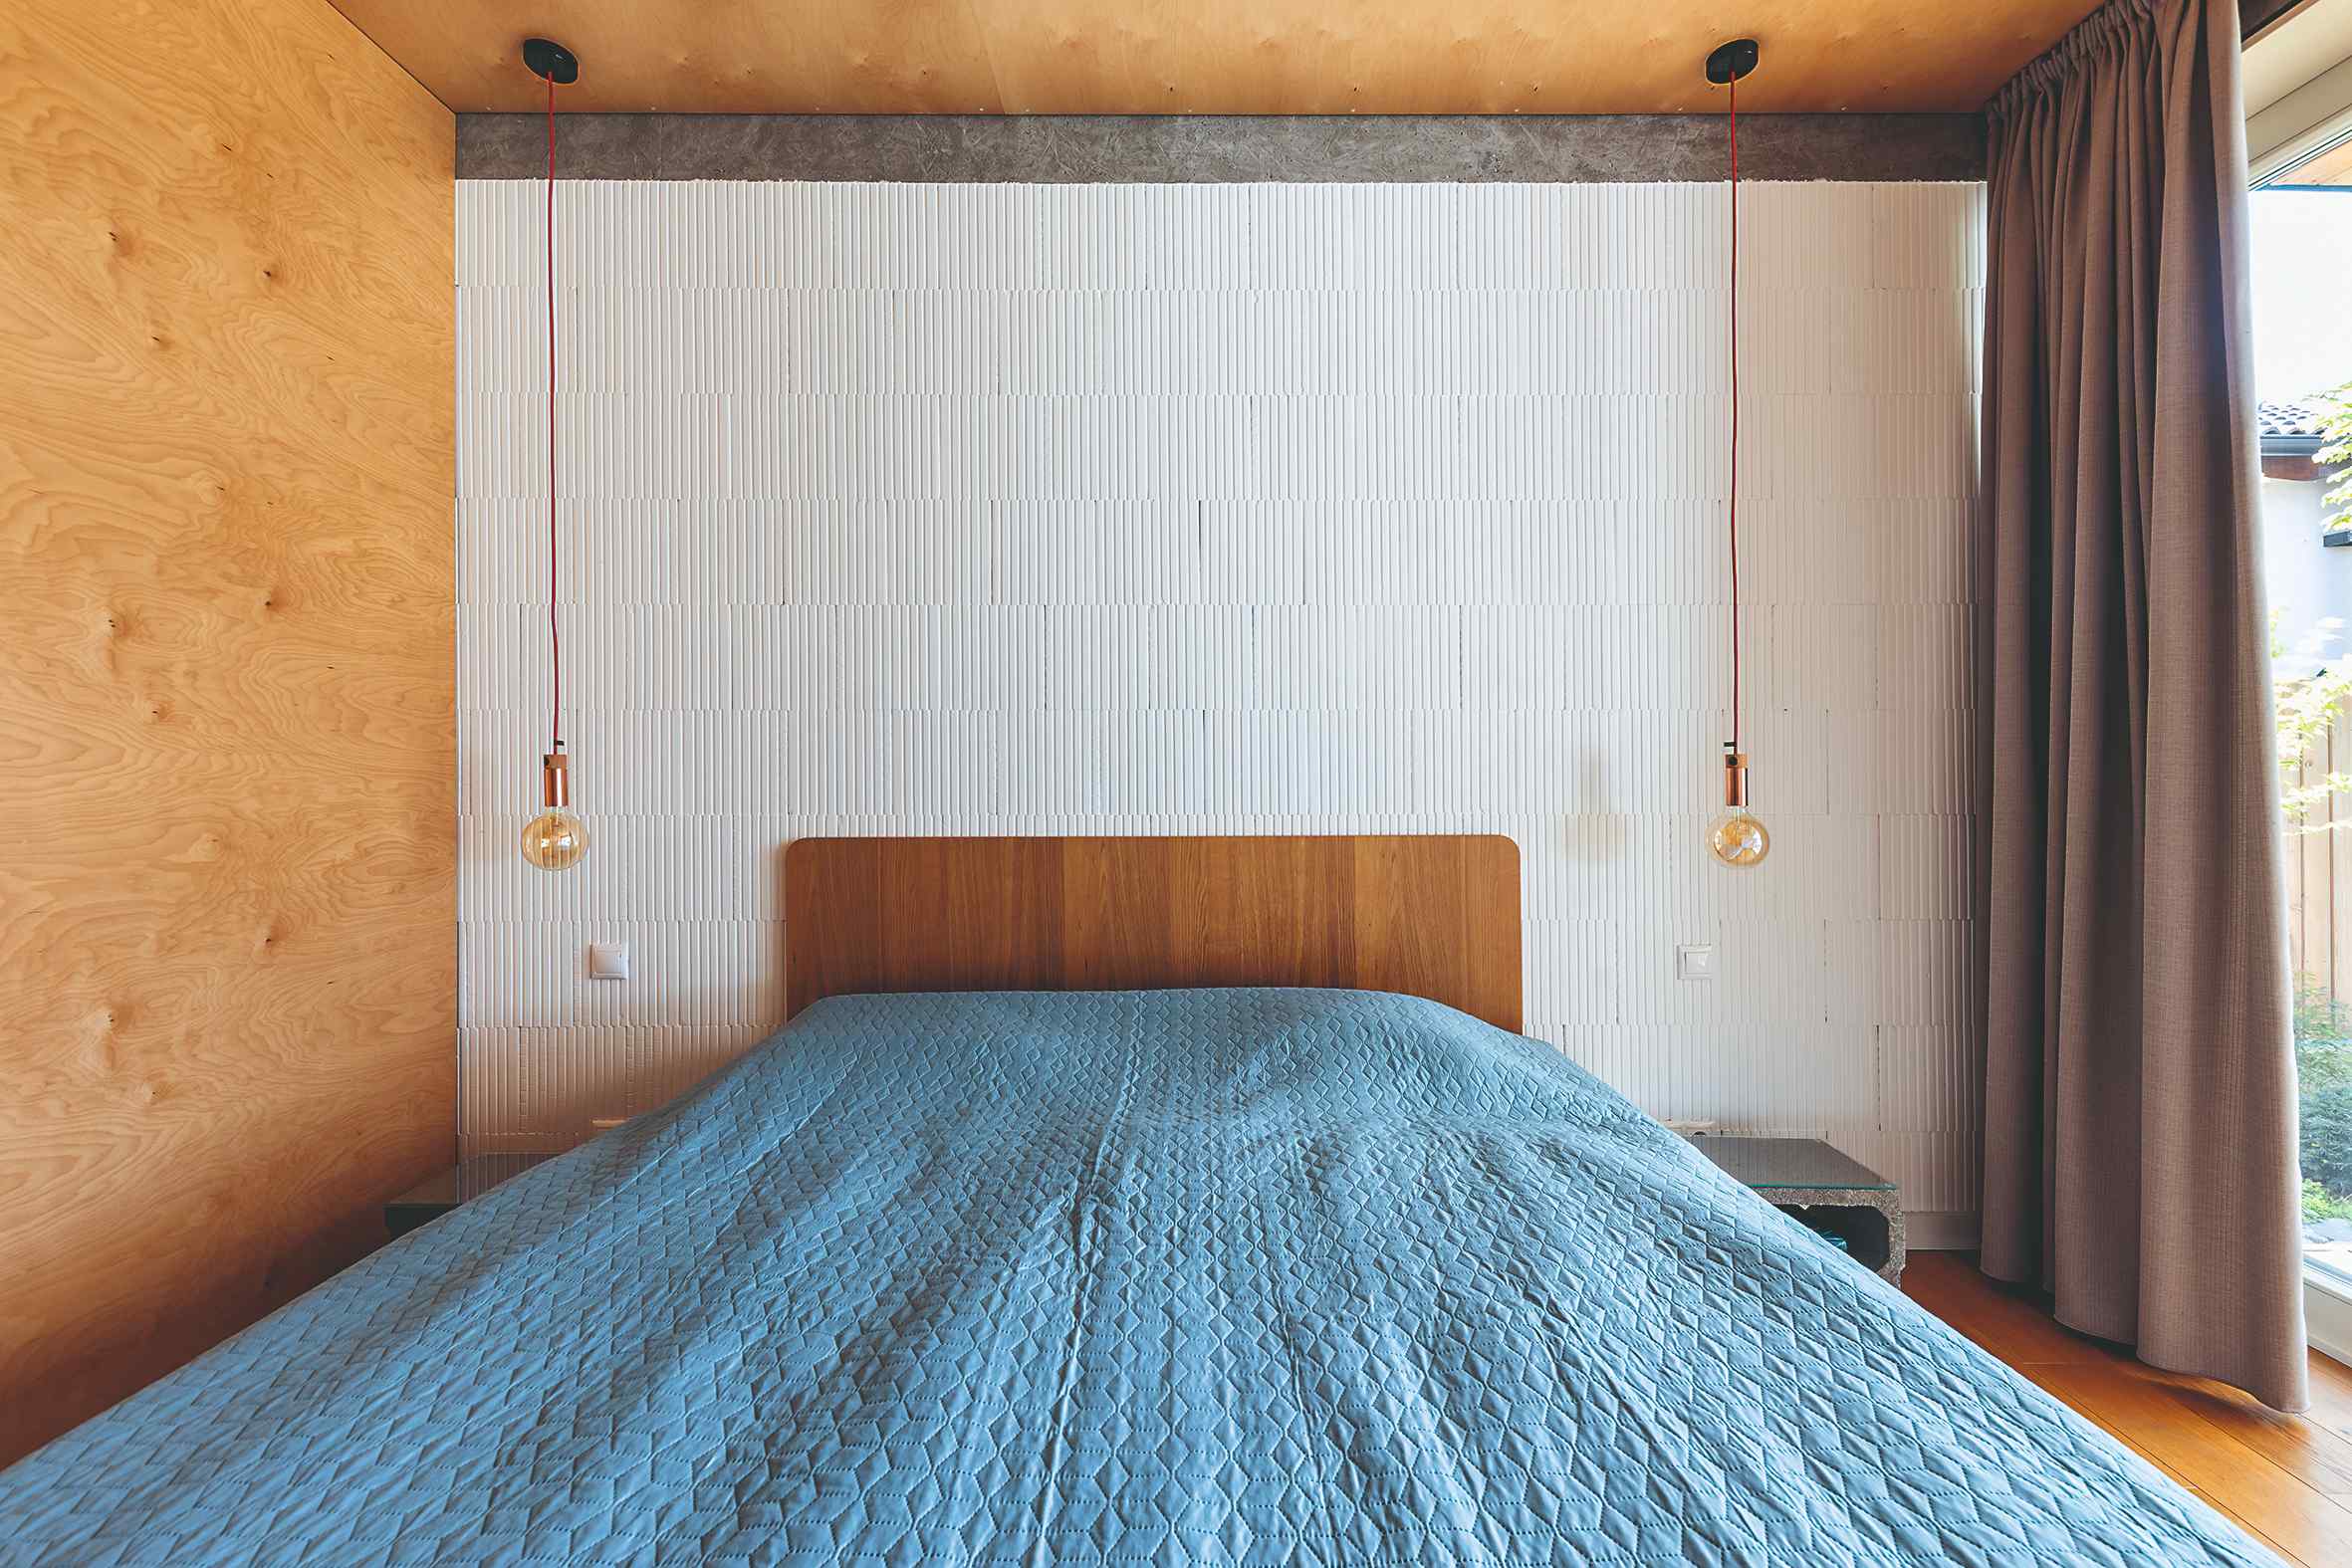 Spálňa s preglejkou na stene posteľ s modrým prehozom